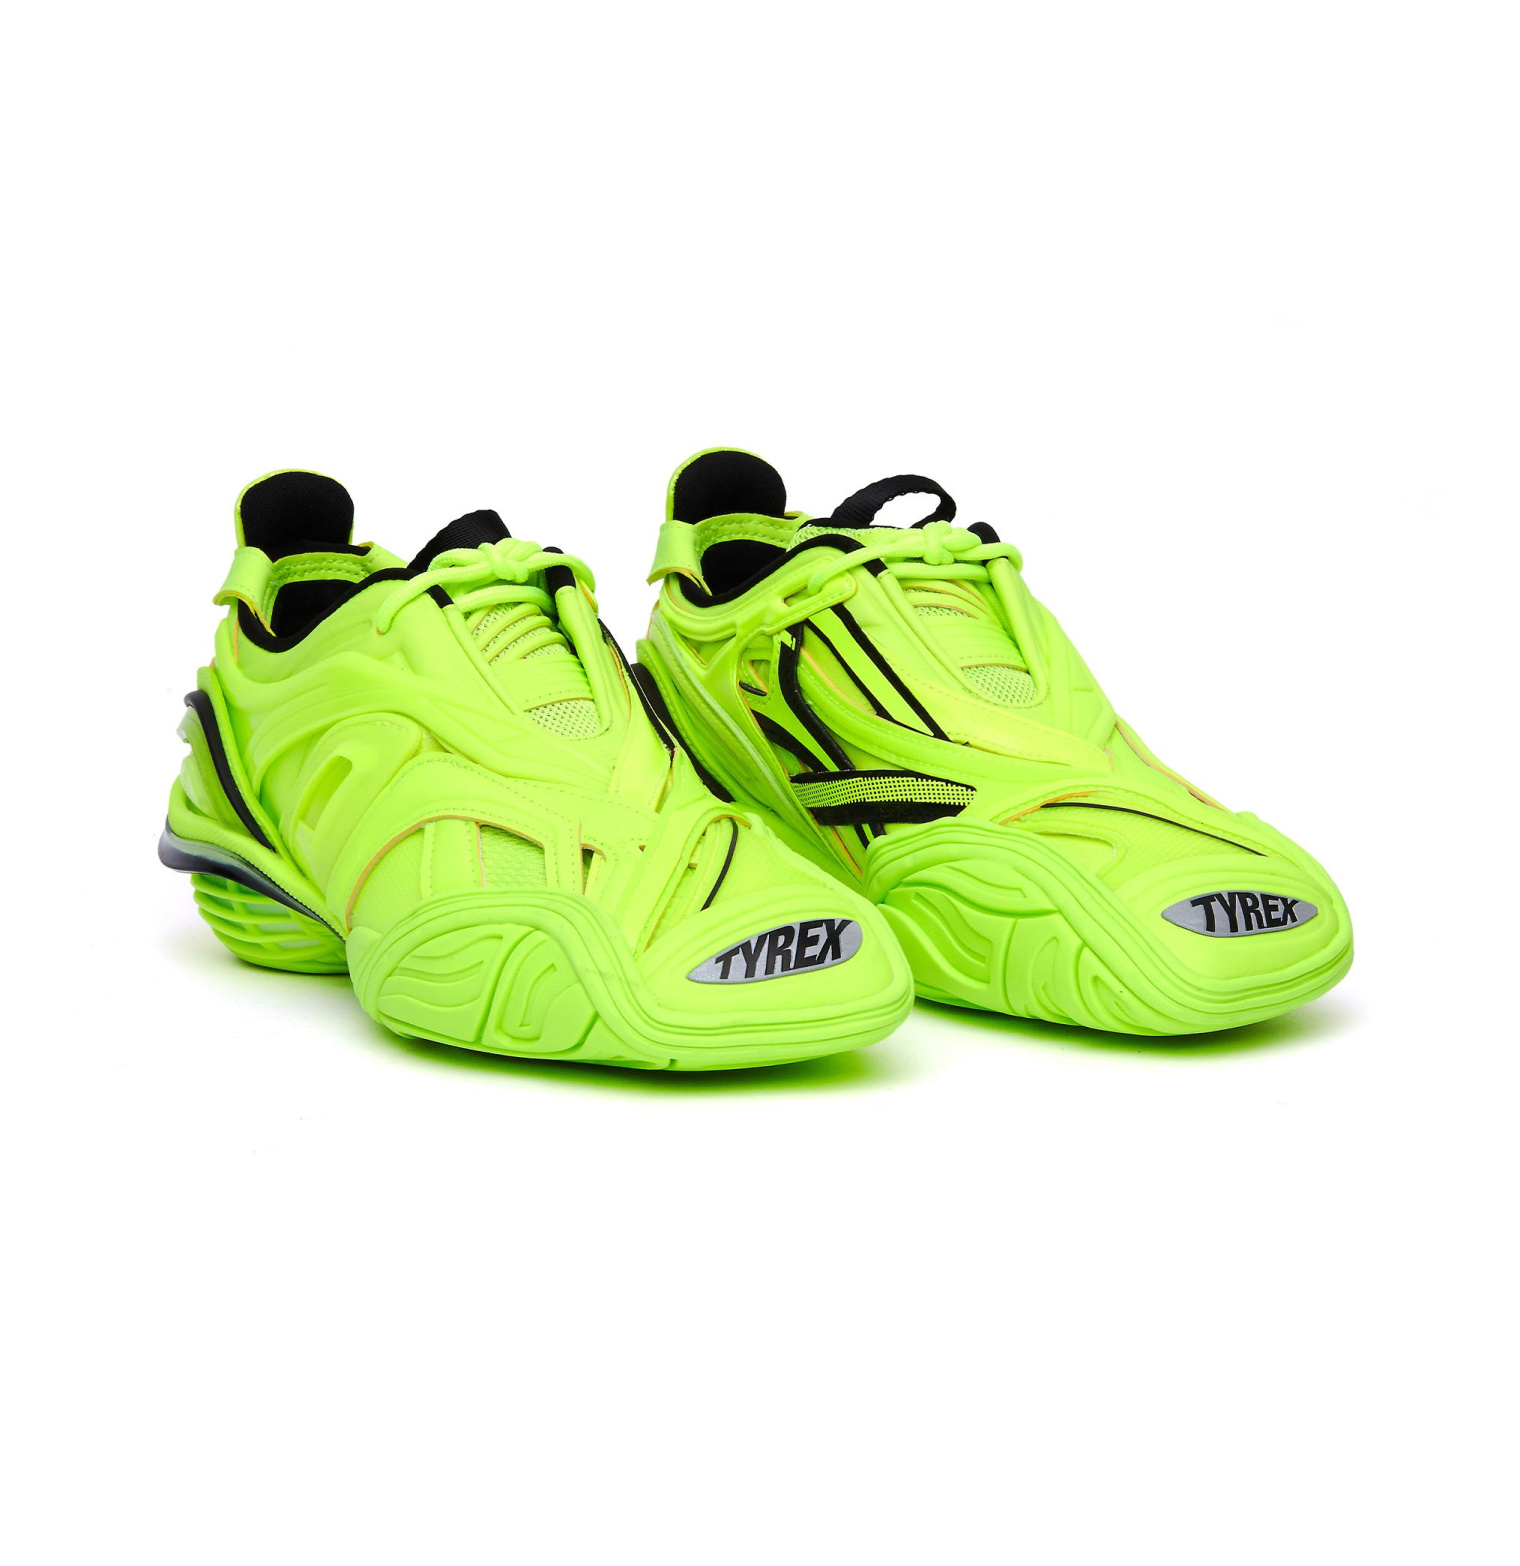 Buy Balenciaga women multicolor tyrex neon yellow sneakers for 